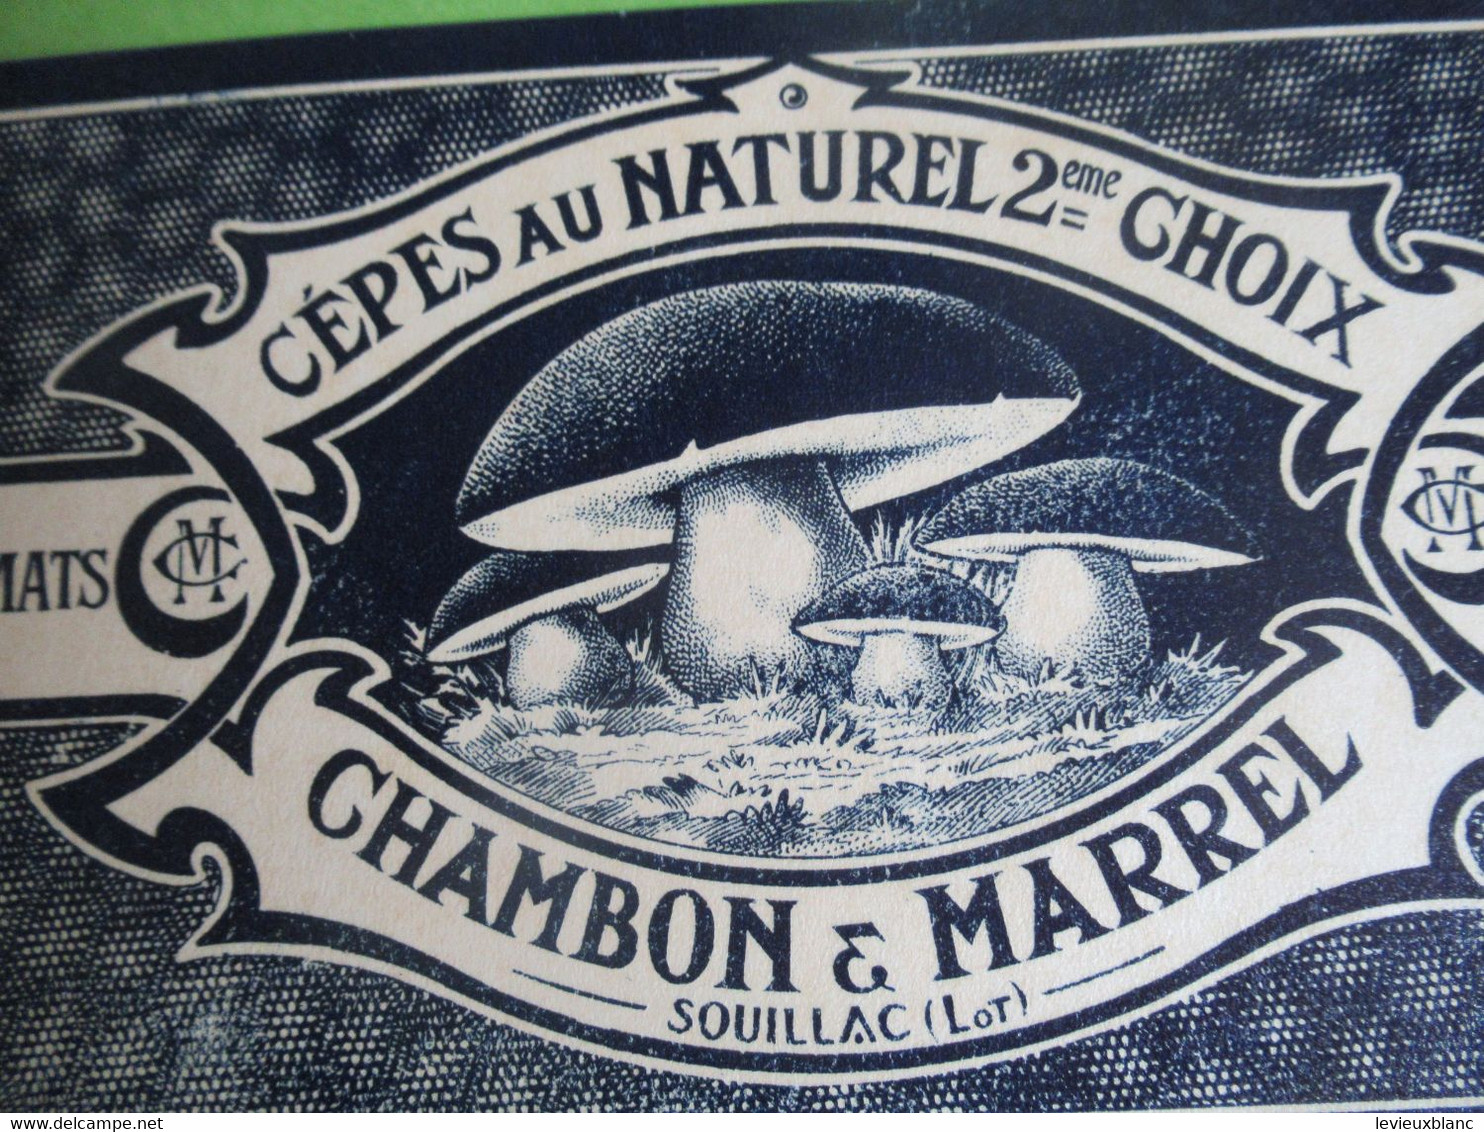 Etiquette Conserve/Cèpes Au Naturel 2éme Choix/CHAMBON & MARREL/SOUILLAC ( Lot ) /début XX                  ETIQ181 - Fruits Et Légumes